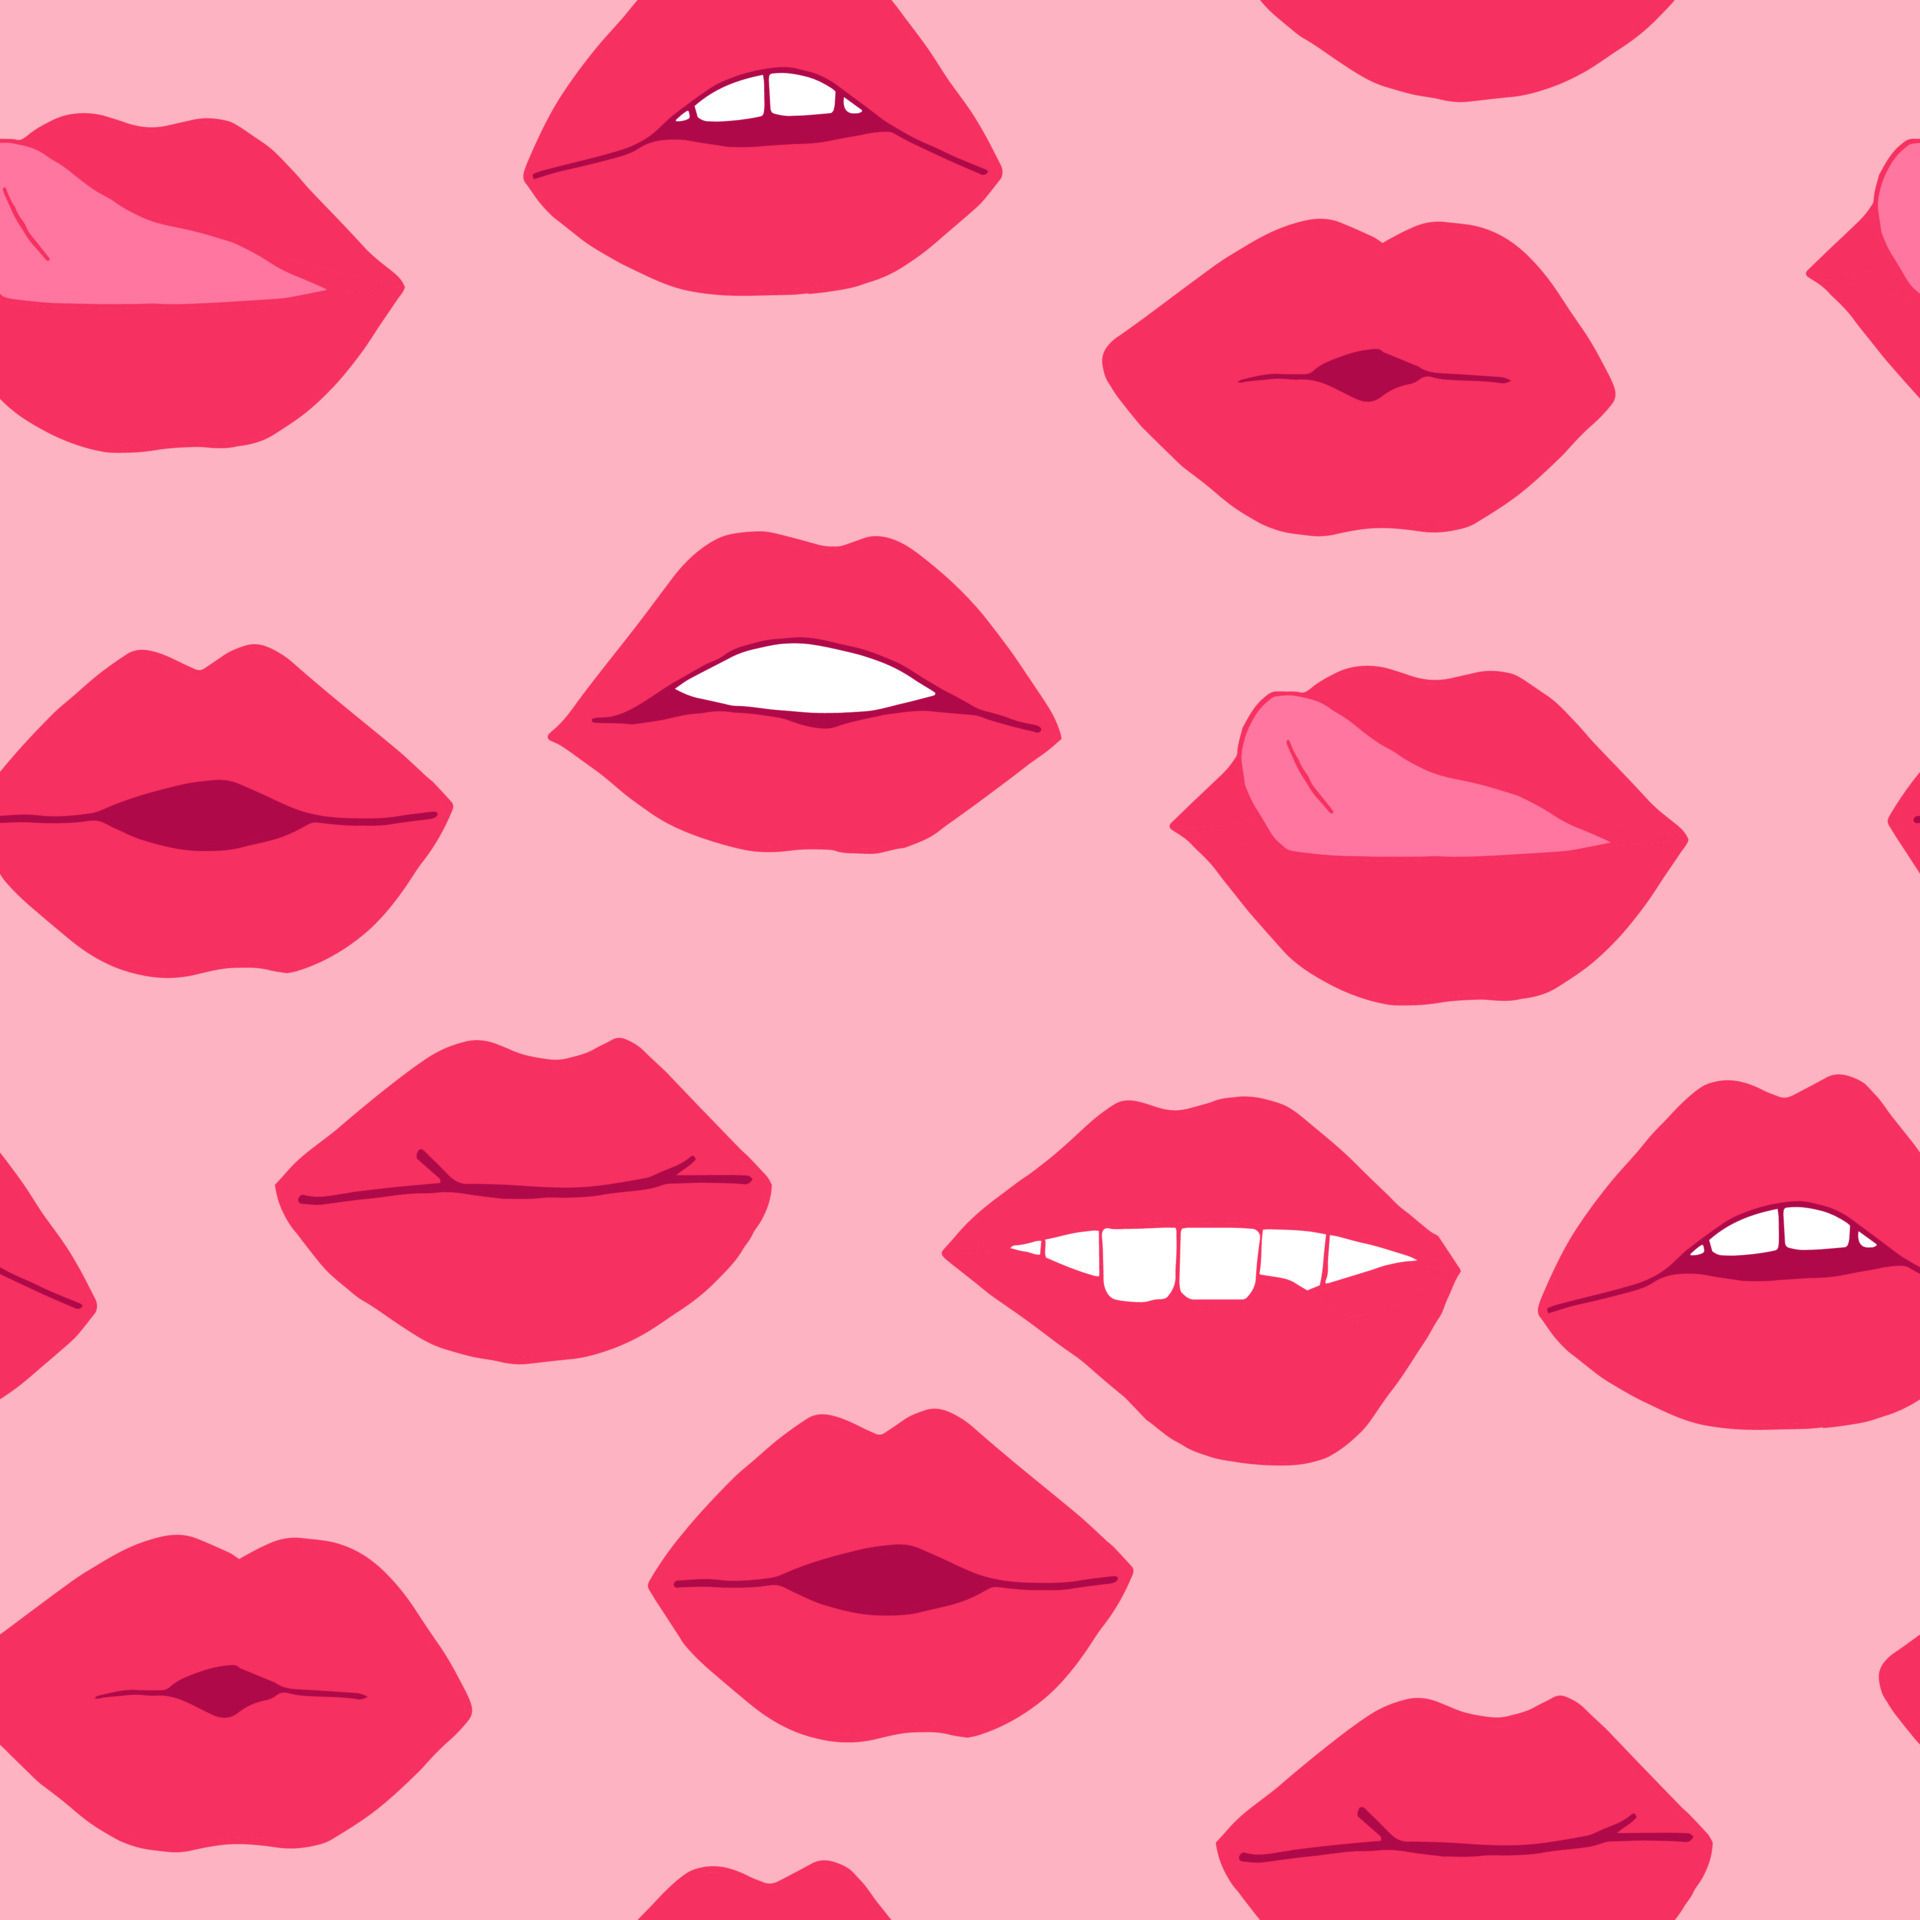  Madchenhaft Hintergrundbild 1920x1920. lippen mit nahtlosem muster des rosa lippenstifts. mundillustrationshand gezeichnet im karikaturstil 10449420 Vektor Kunst bei Vecteezy